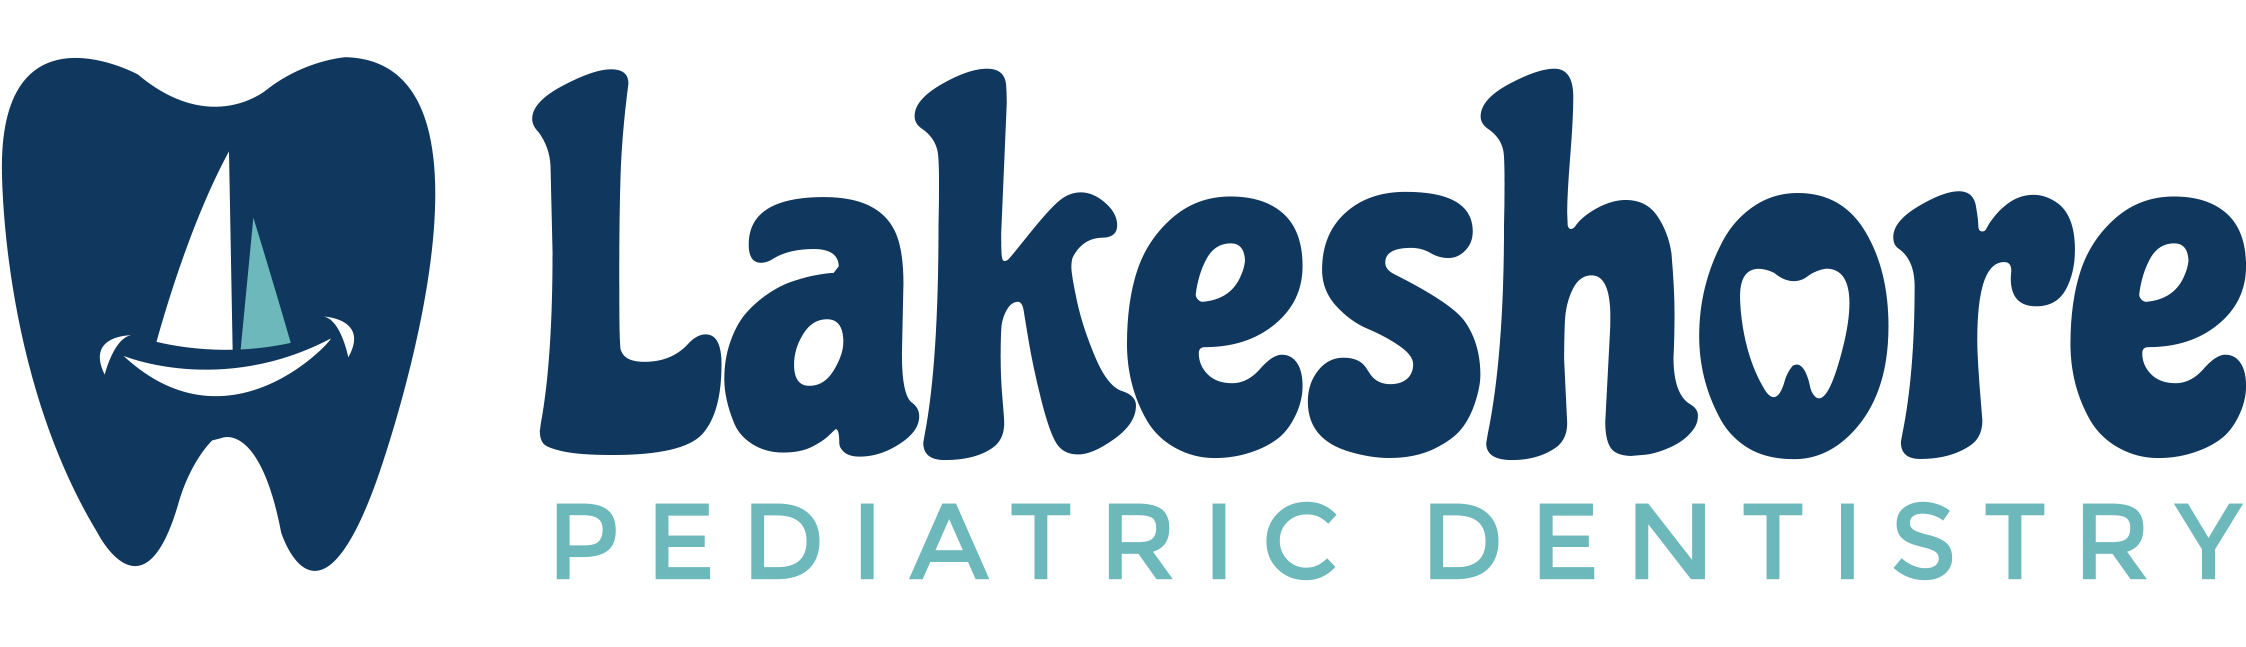 Lakeshore Pediatric Dentistry